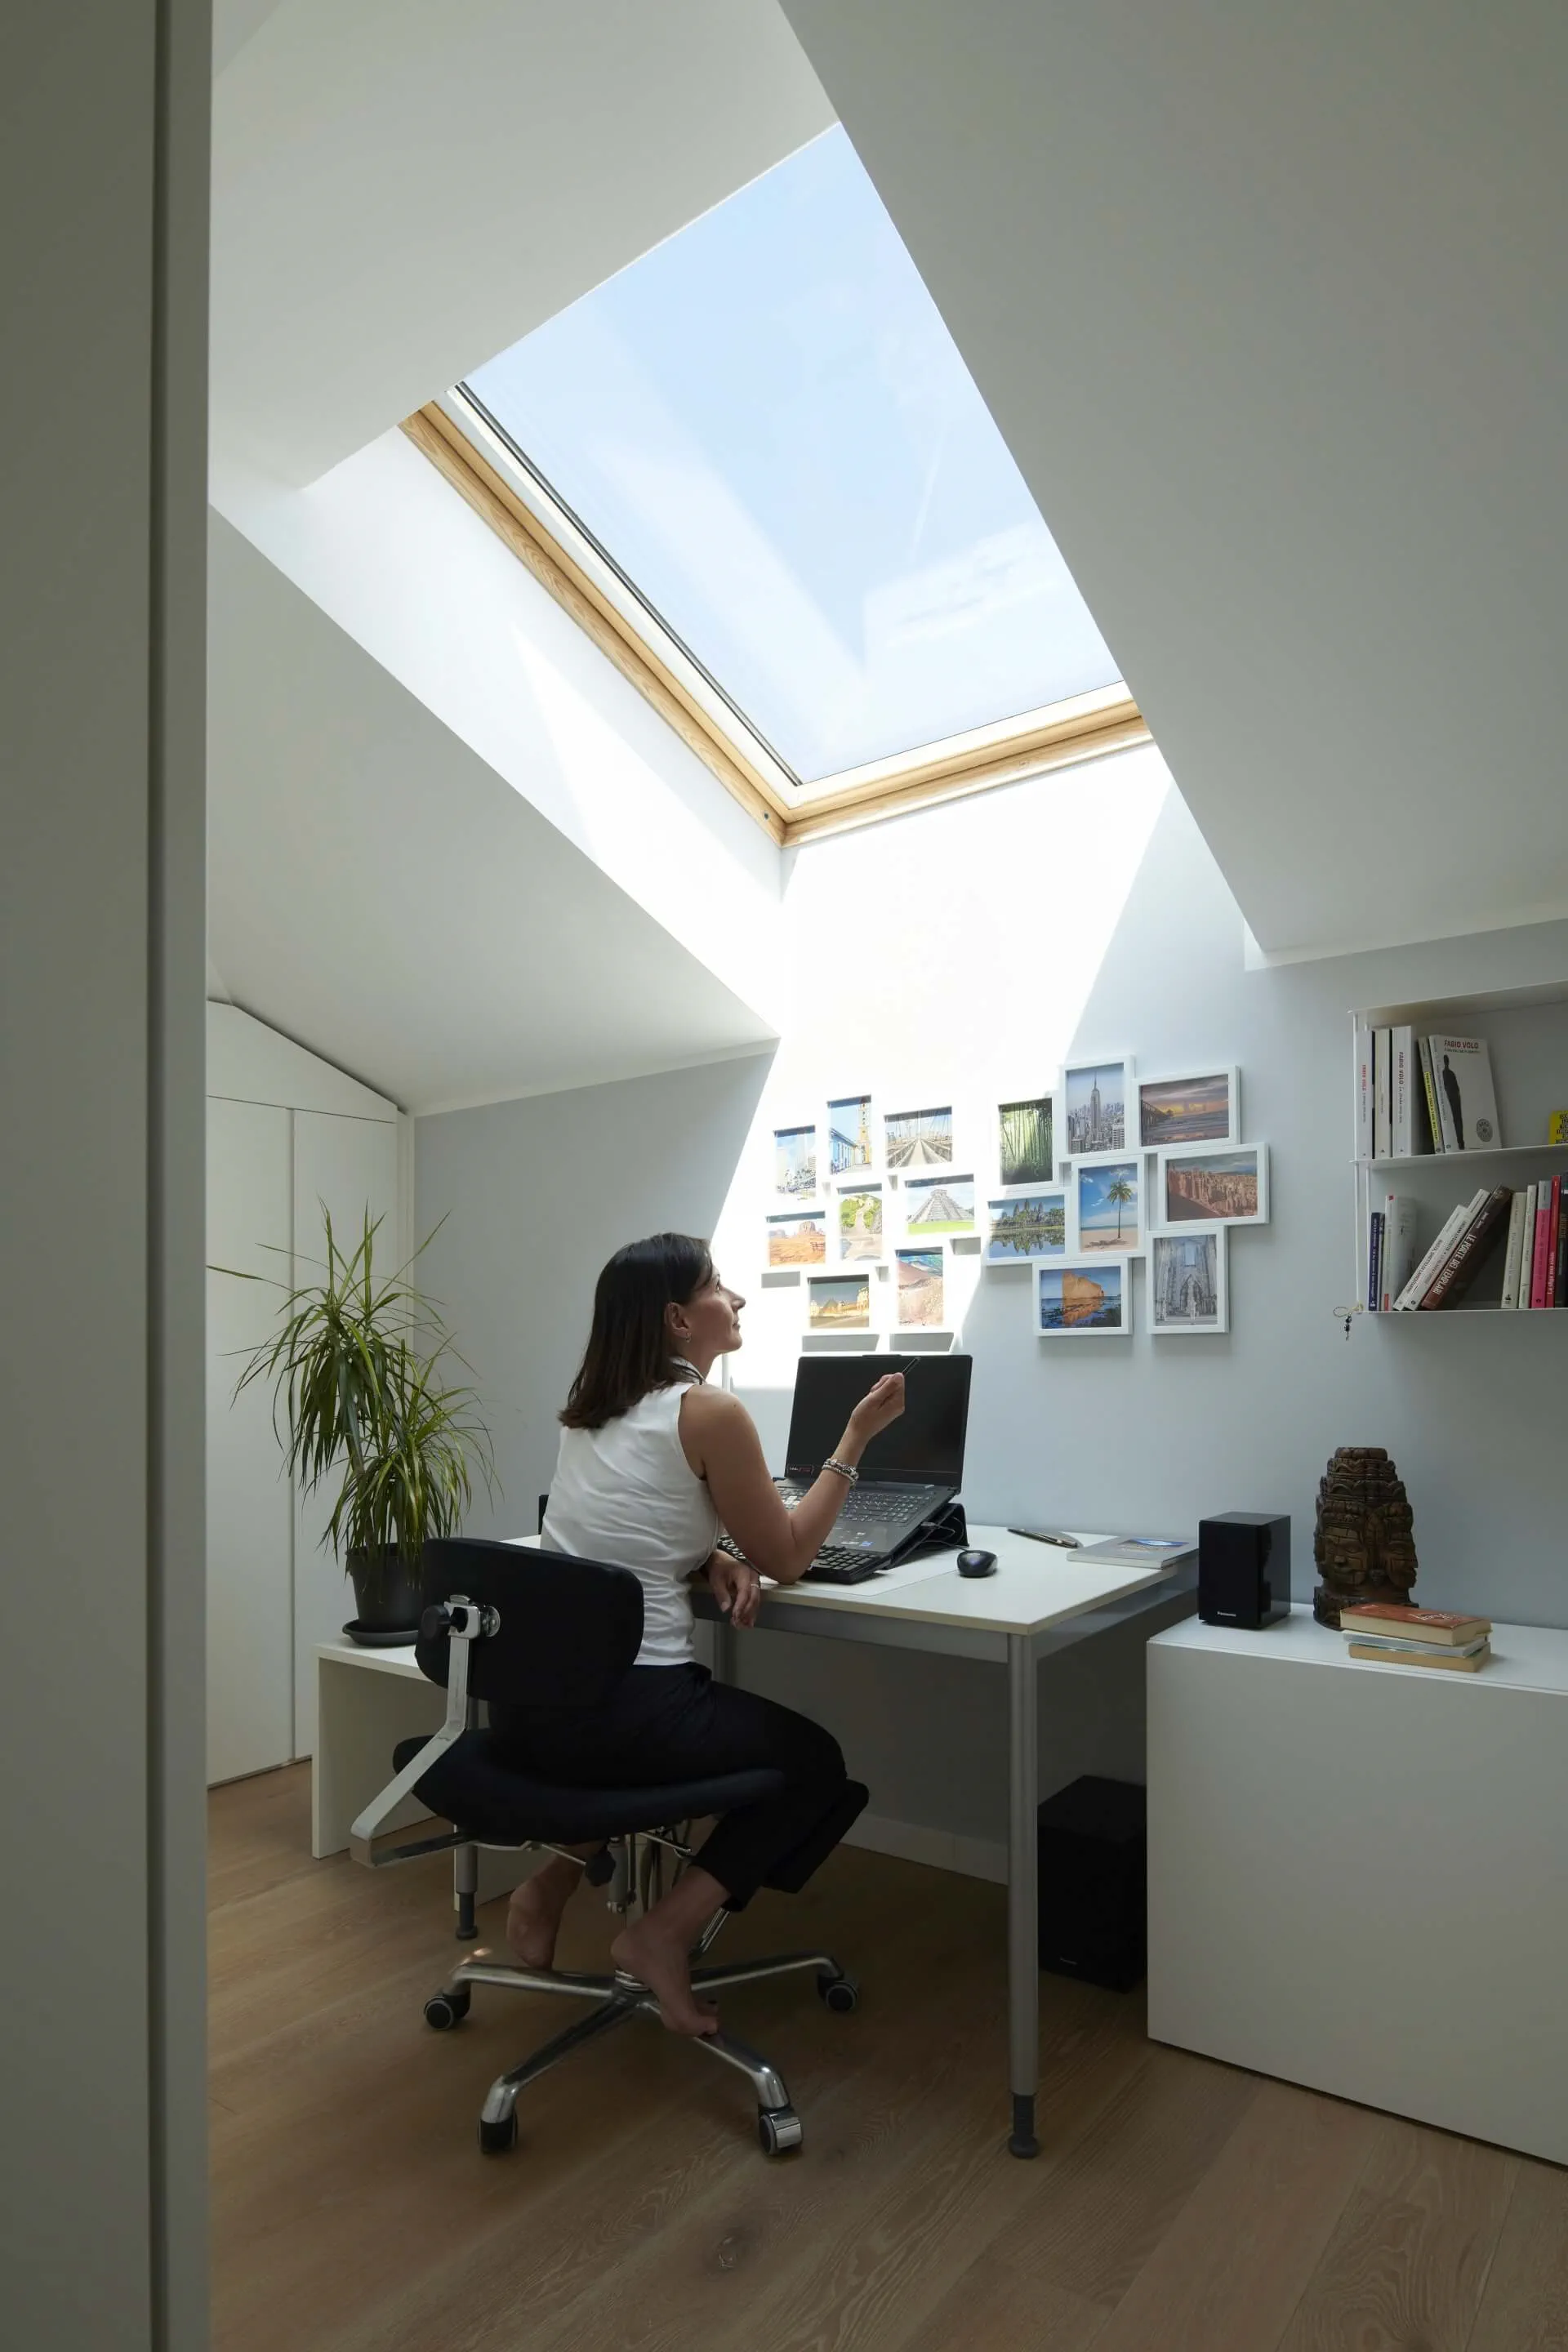 Modernes Homeoffice mit natürlichem Licht von VELUX Dachflächenfenster, Schreibtisch, Stuhl und Wandbildern.